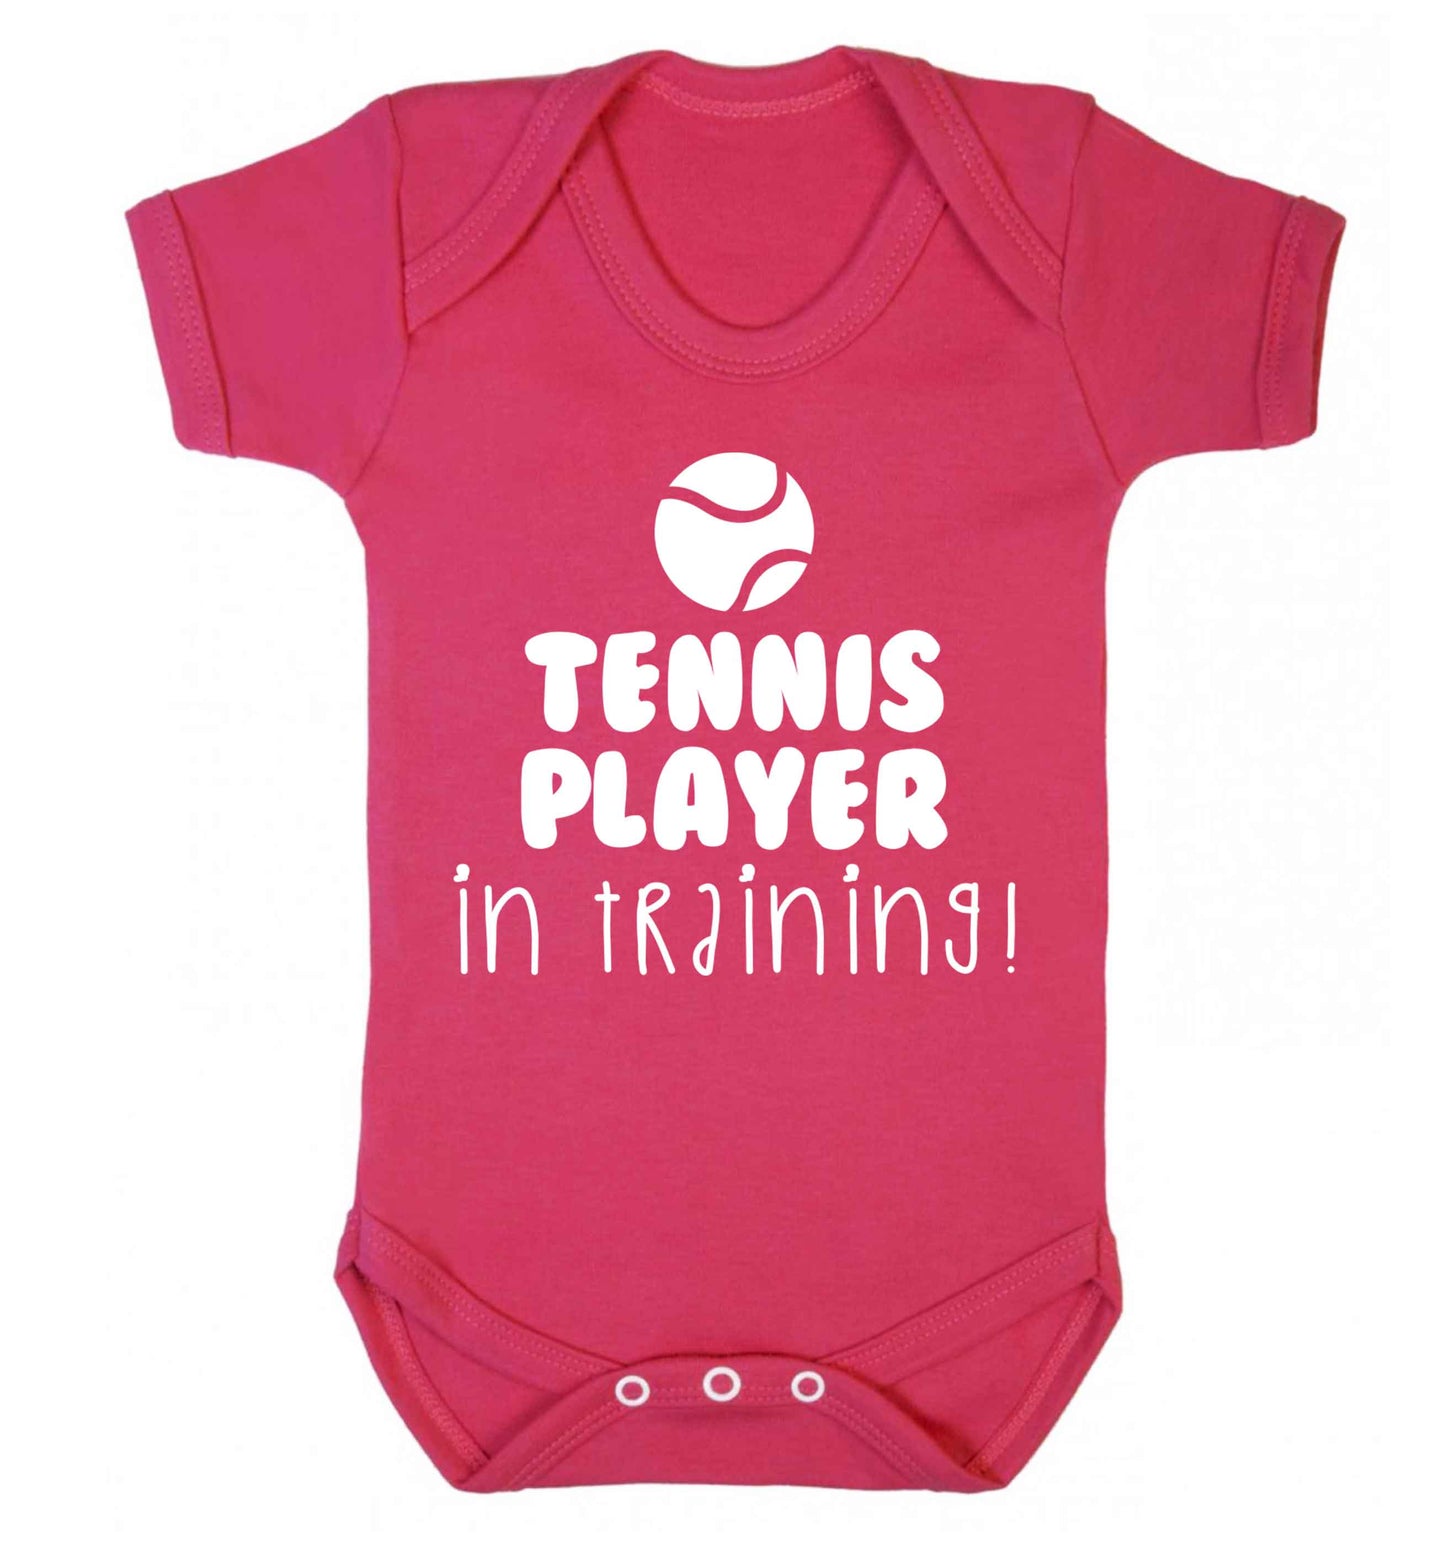 Tennis player in training Baby Vest dark pink 18-24 months